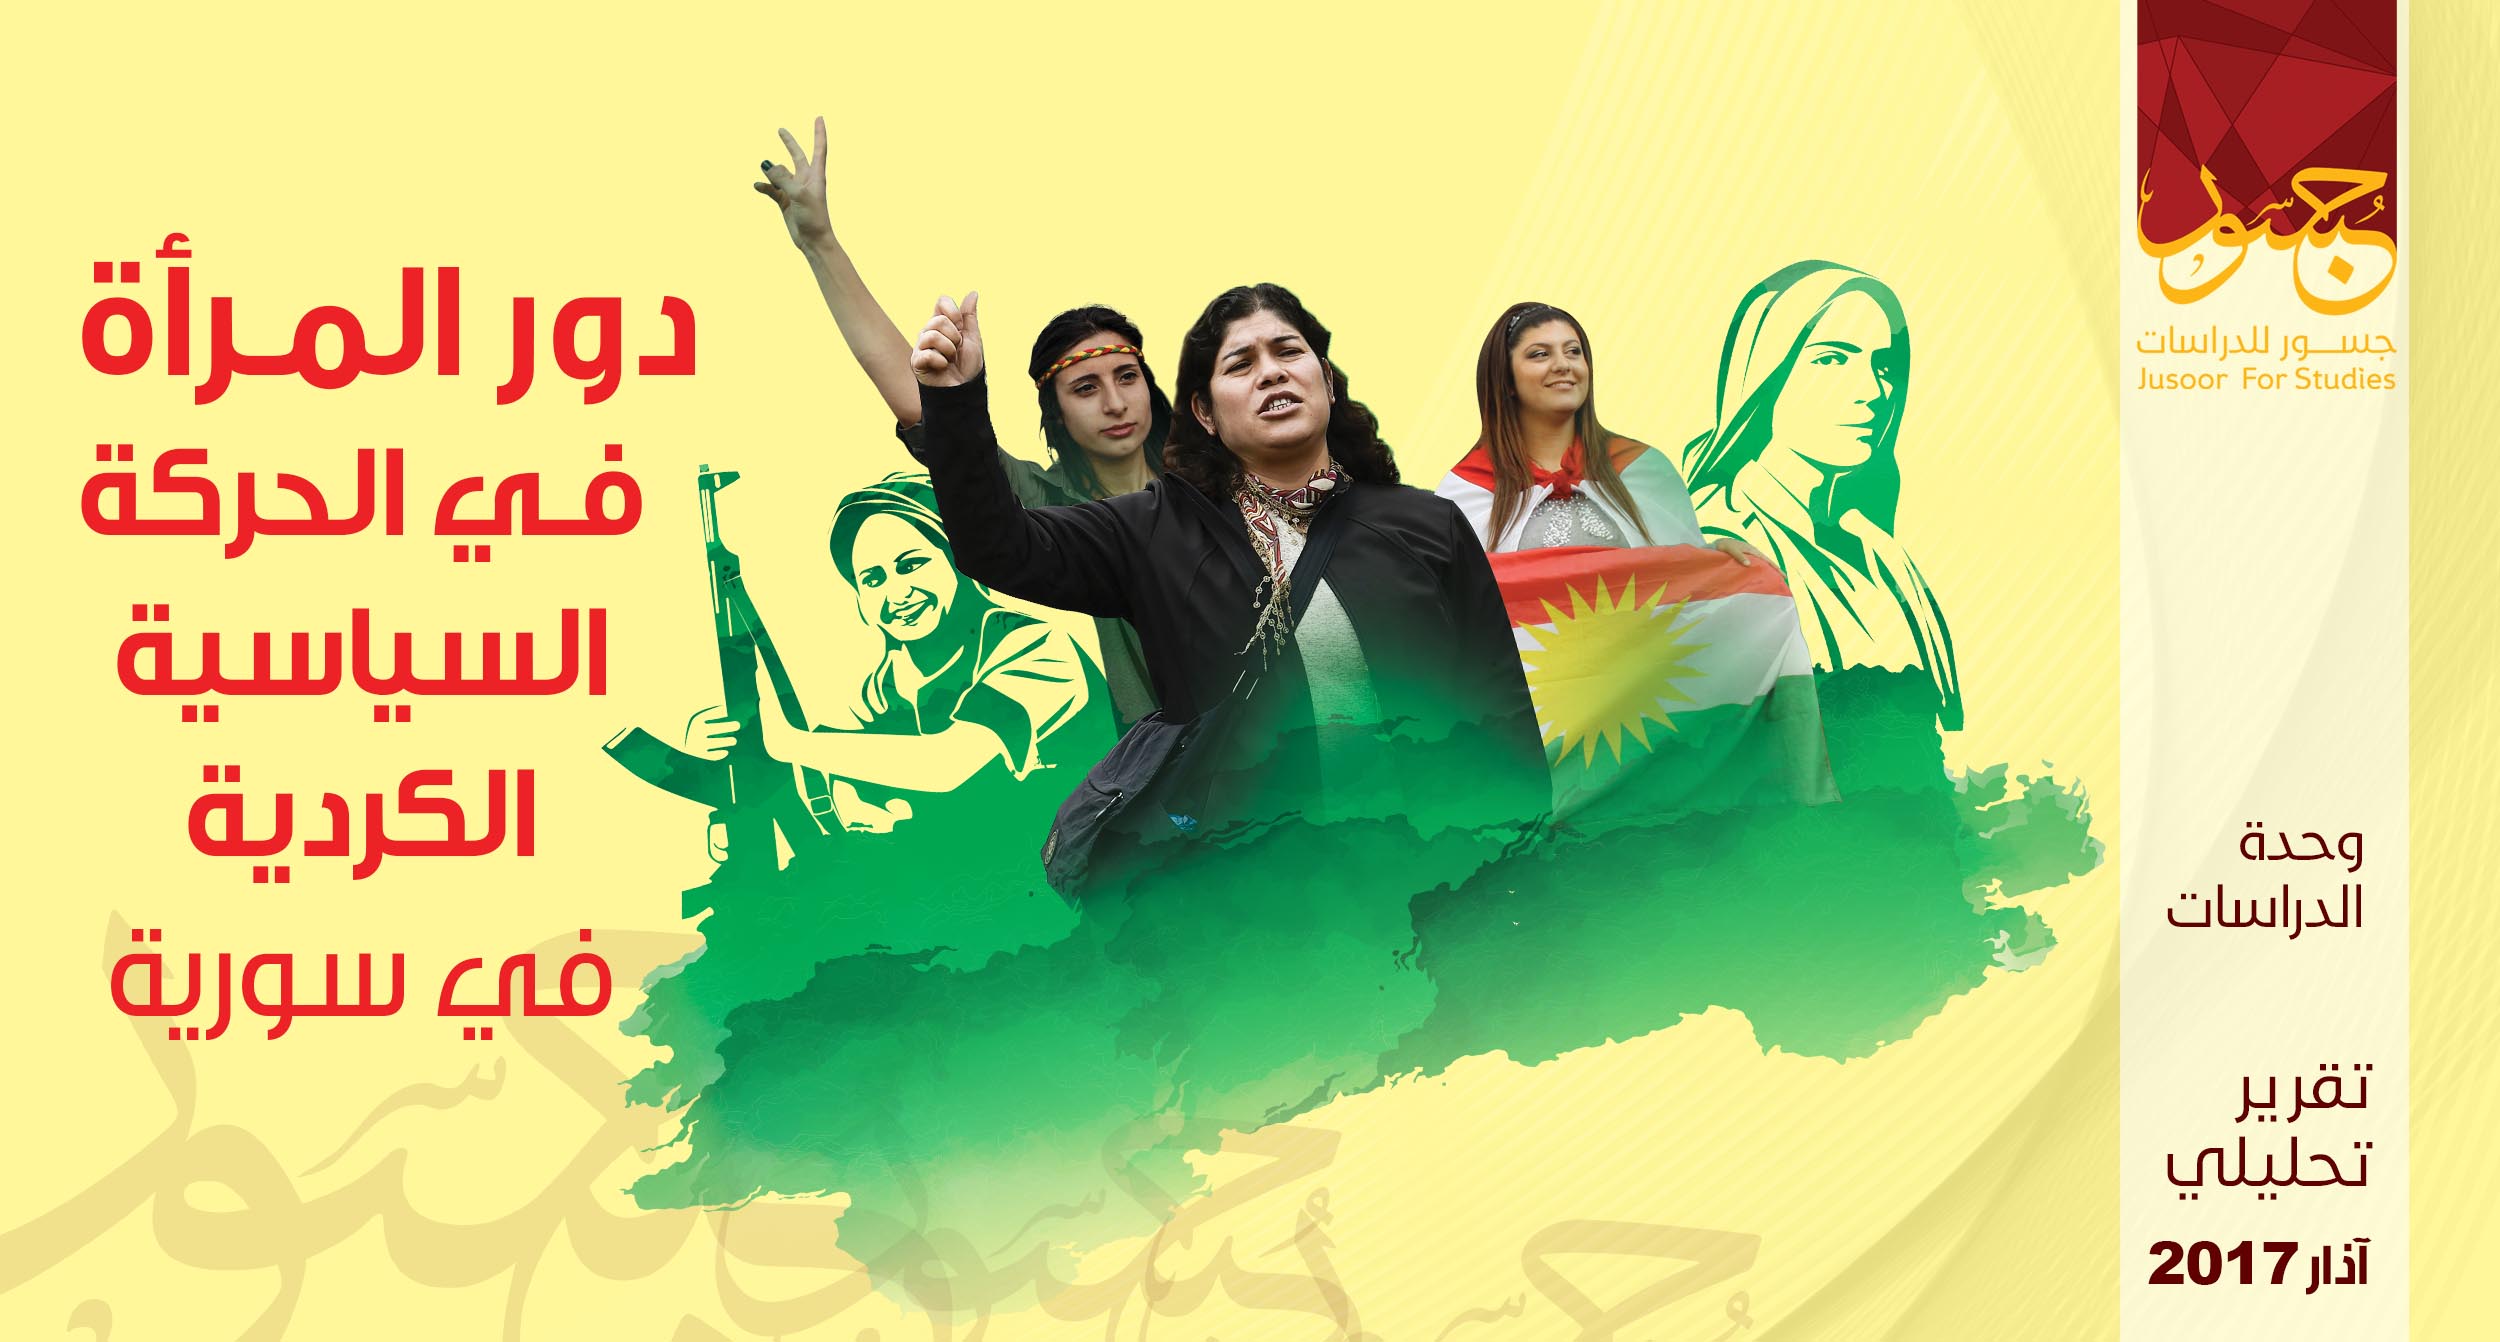 دور المرأة في الحركة السياسية الكردية في سورية